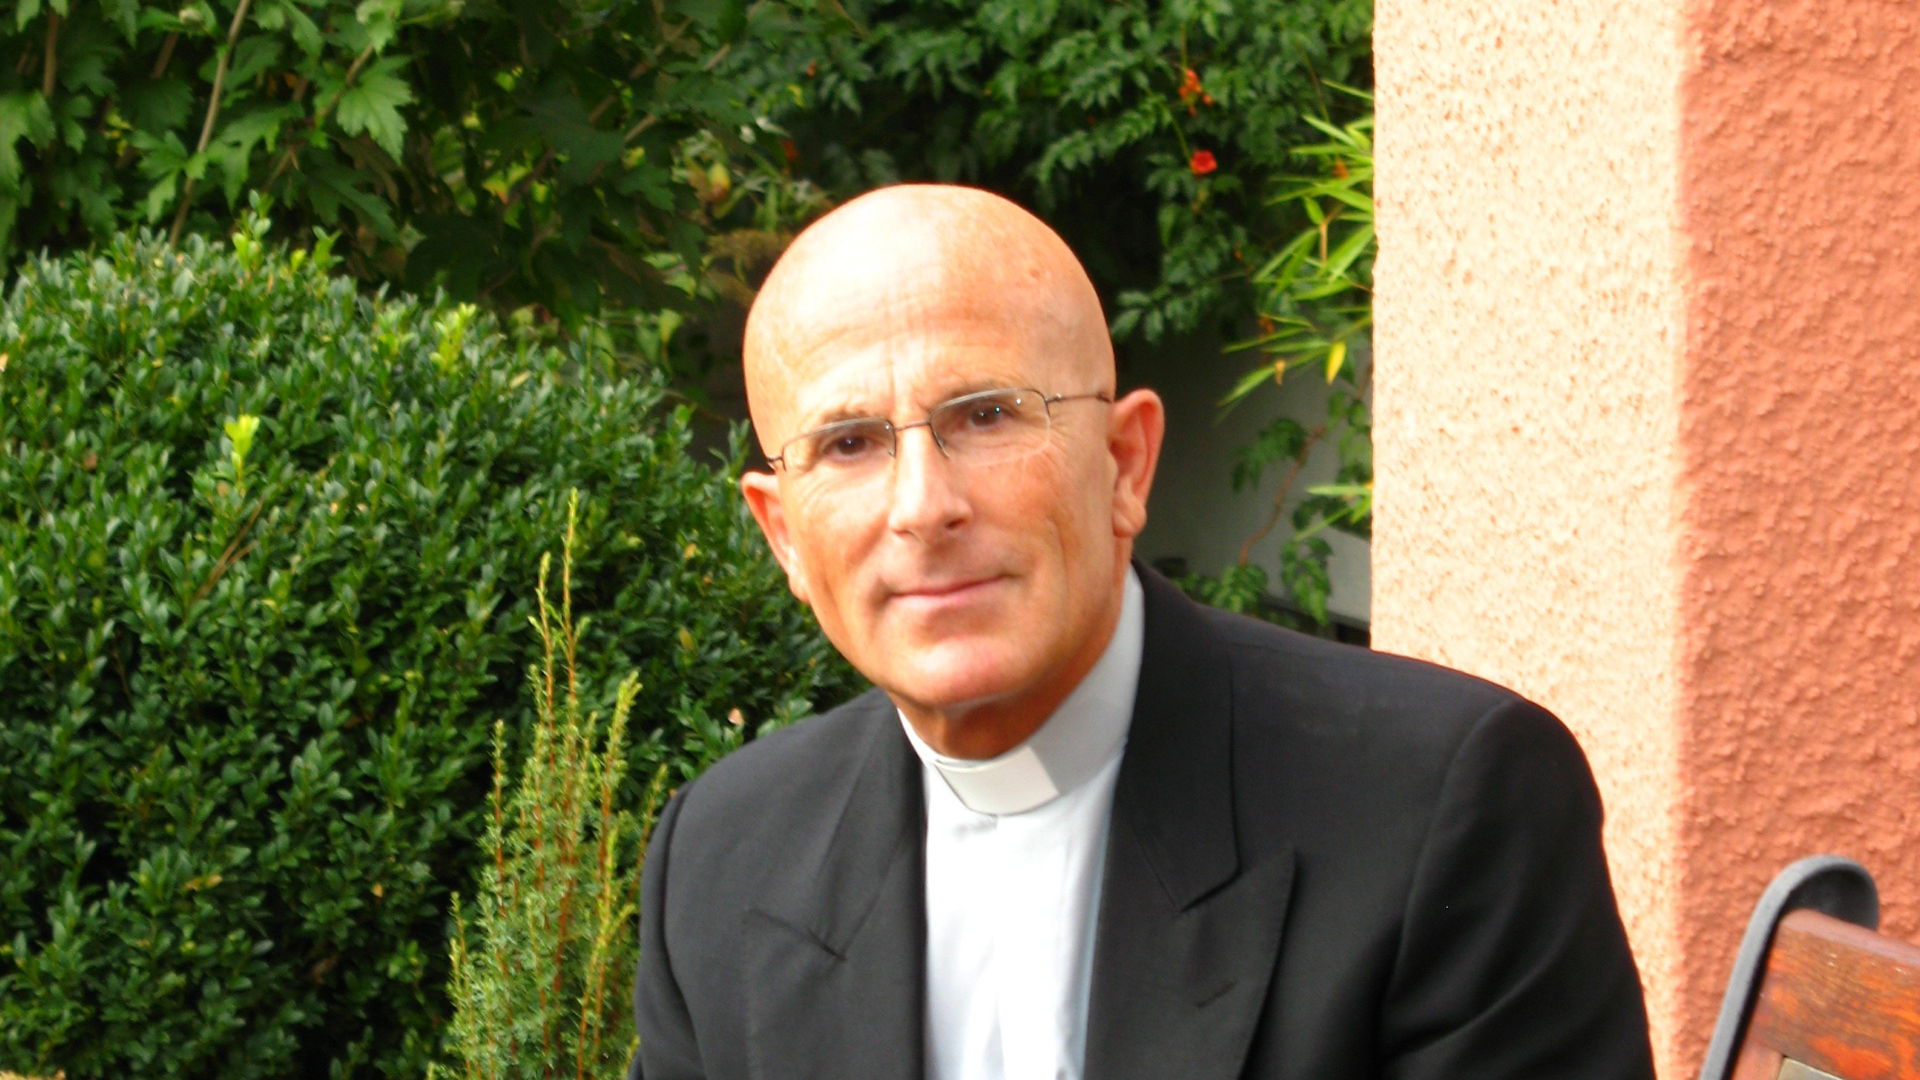 Joseph Bonnemain, le nouvel évêque de Coire, devrait rester en fonction au moins 5 ans. | DR 